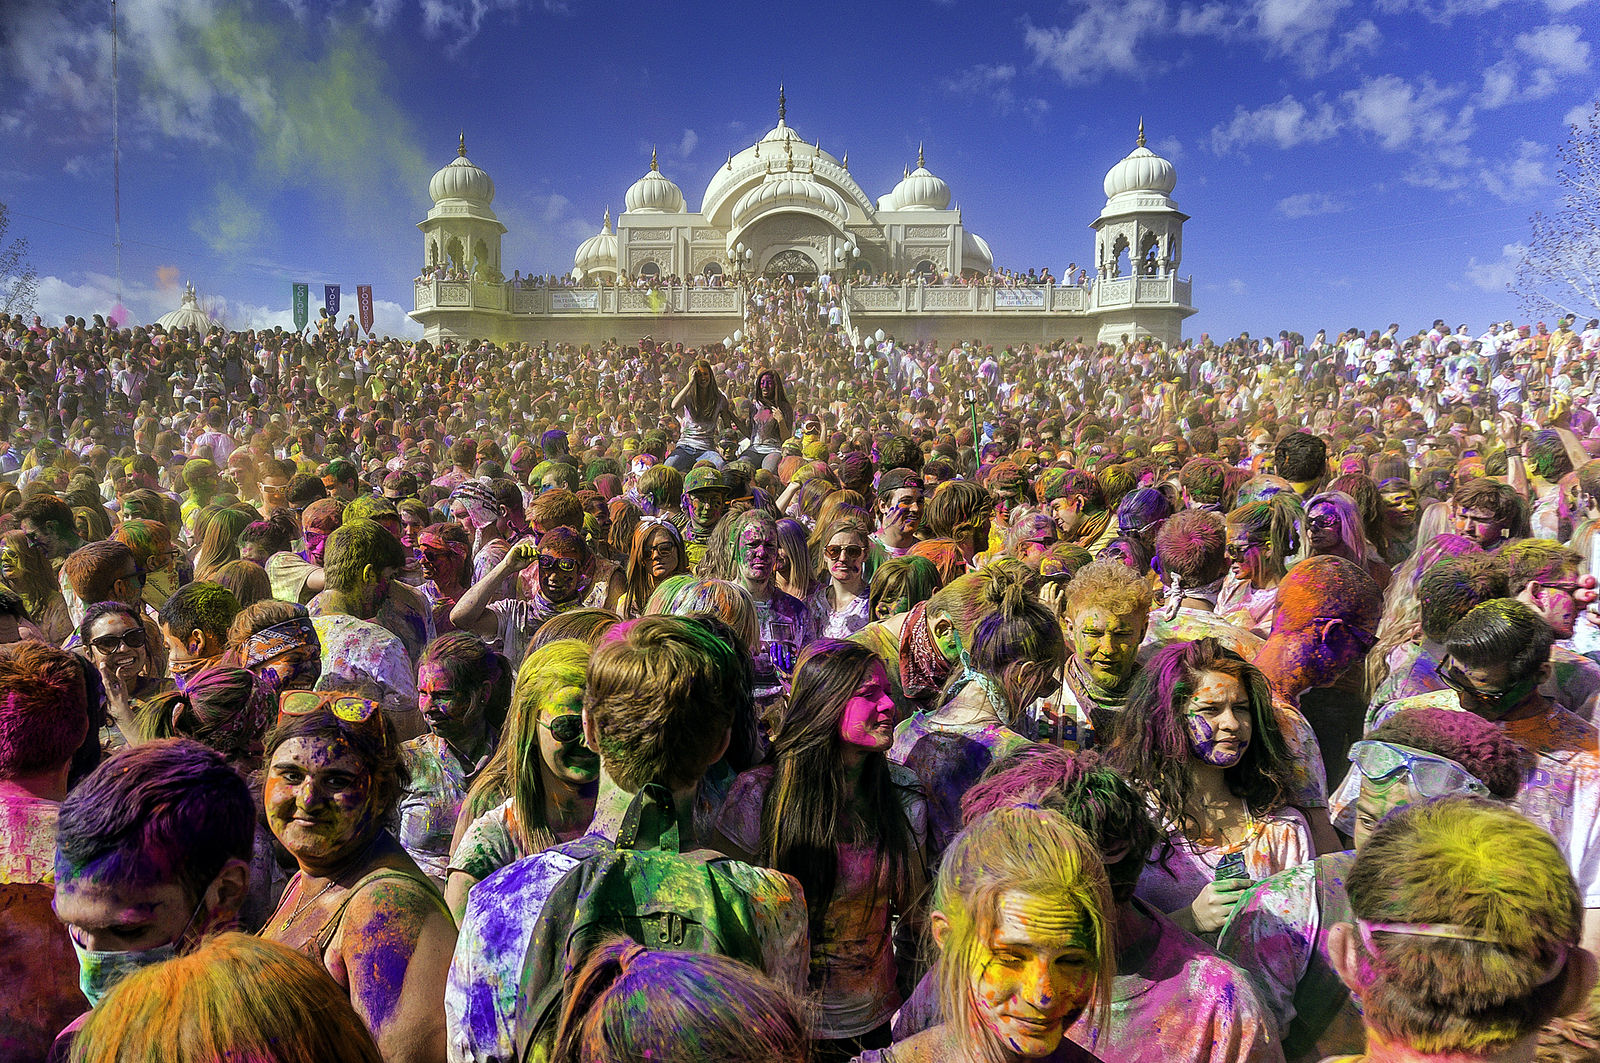 インドで行われる“春の到来”を讃える祭「ホーリー祭」 Creative Commons Attribution-Share Alike 2.0 Generic license image “Holi / Festival of Colors 2013” by Steven Gerner